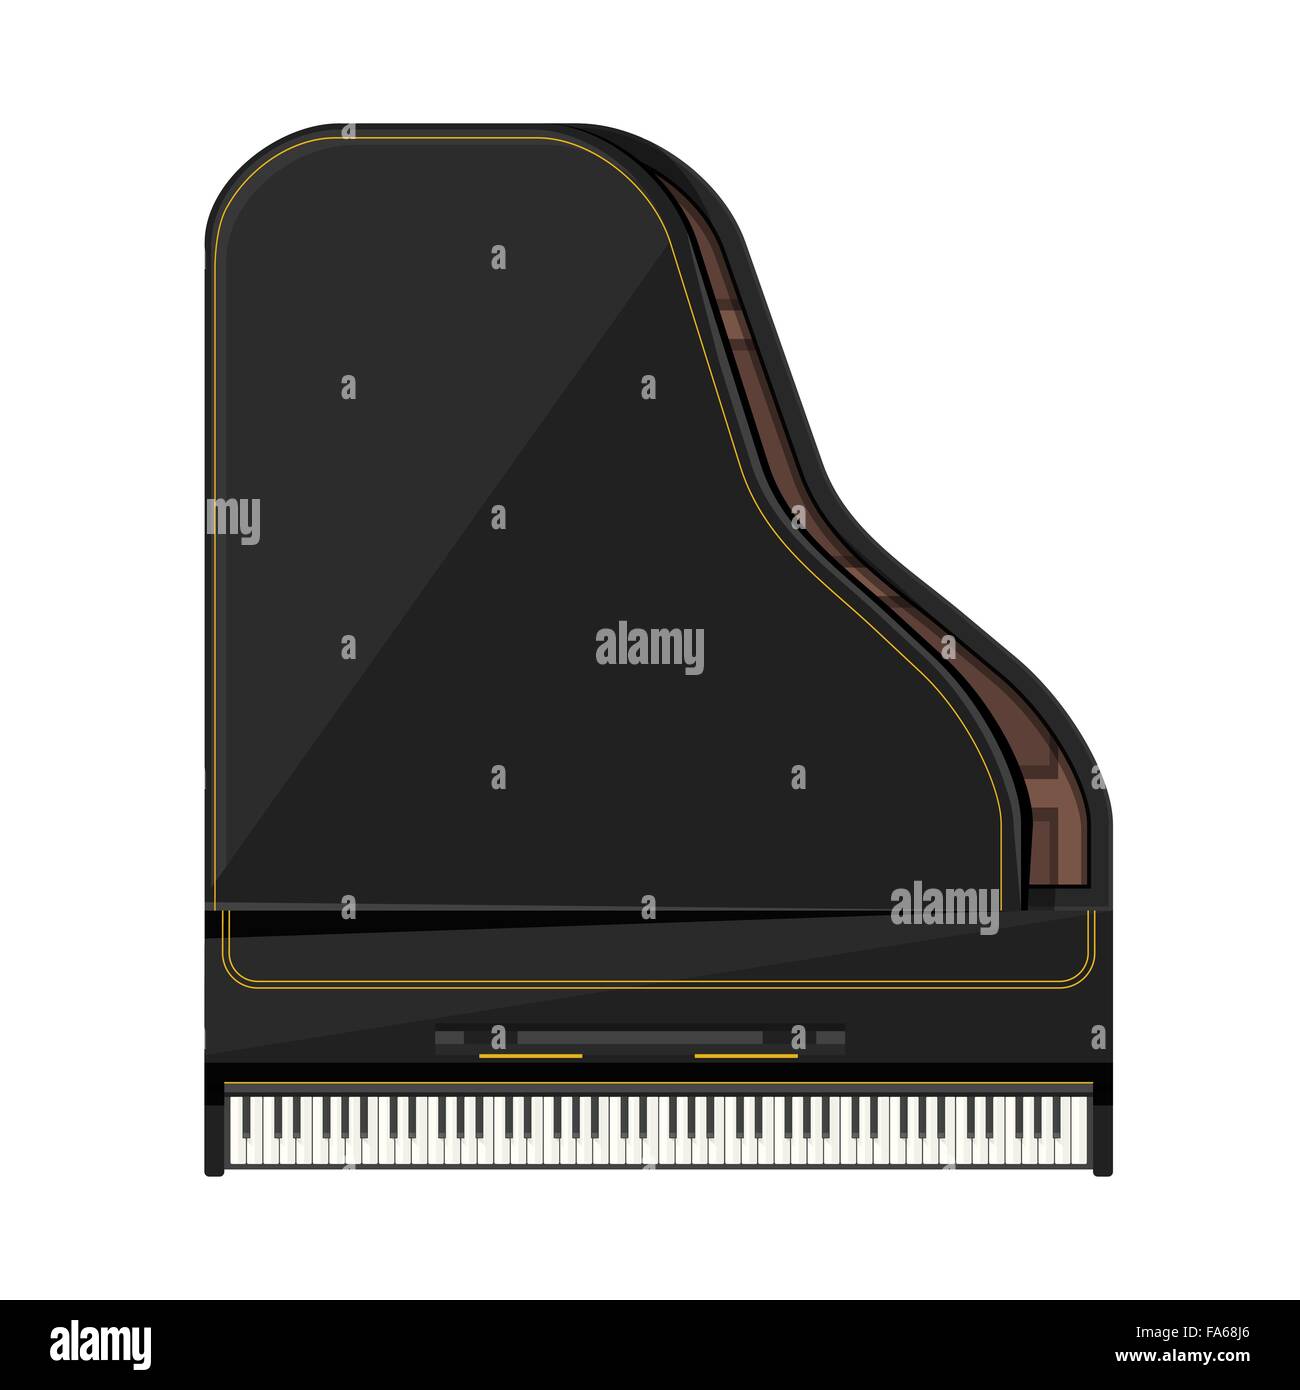 Couleur noir rayures or vecteur modèle plat grand piano illustration isolé sur fond blanc Vue de dessus Illustration de Vecteur